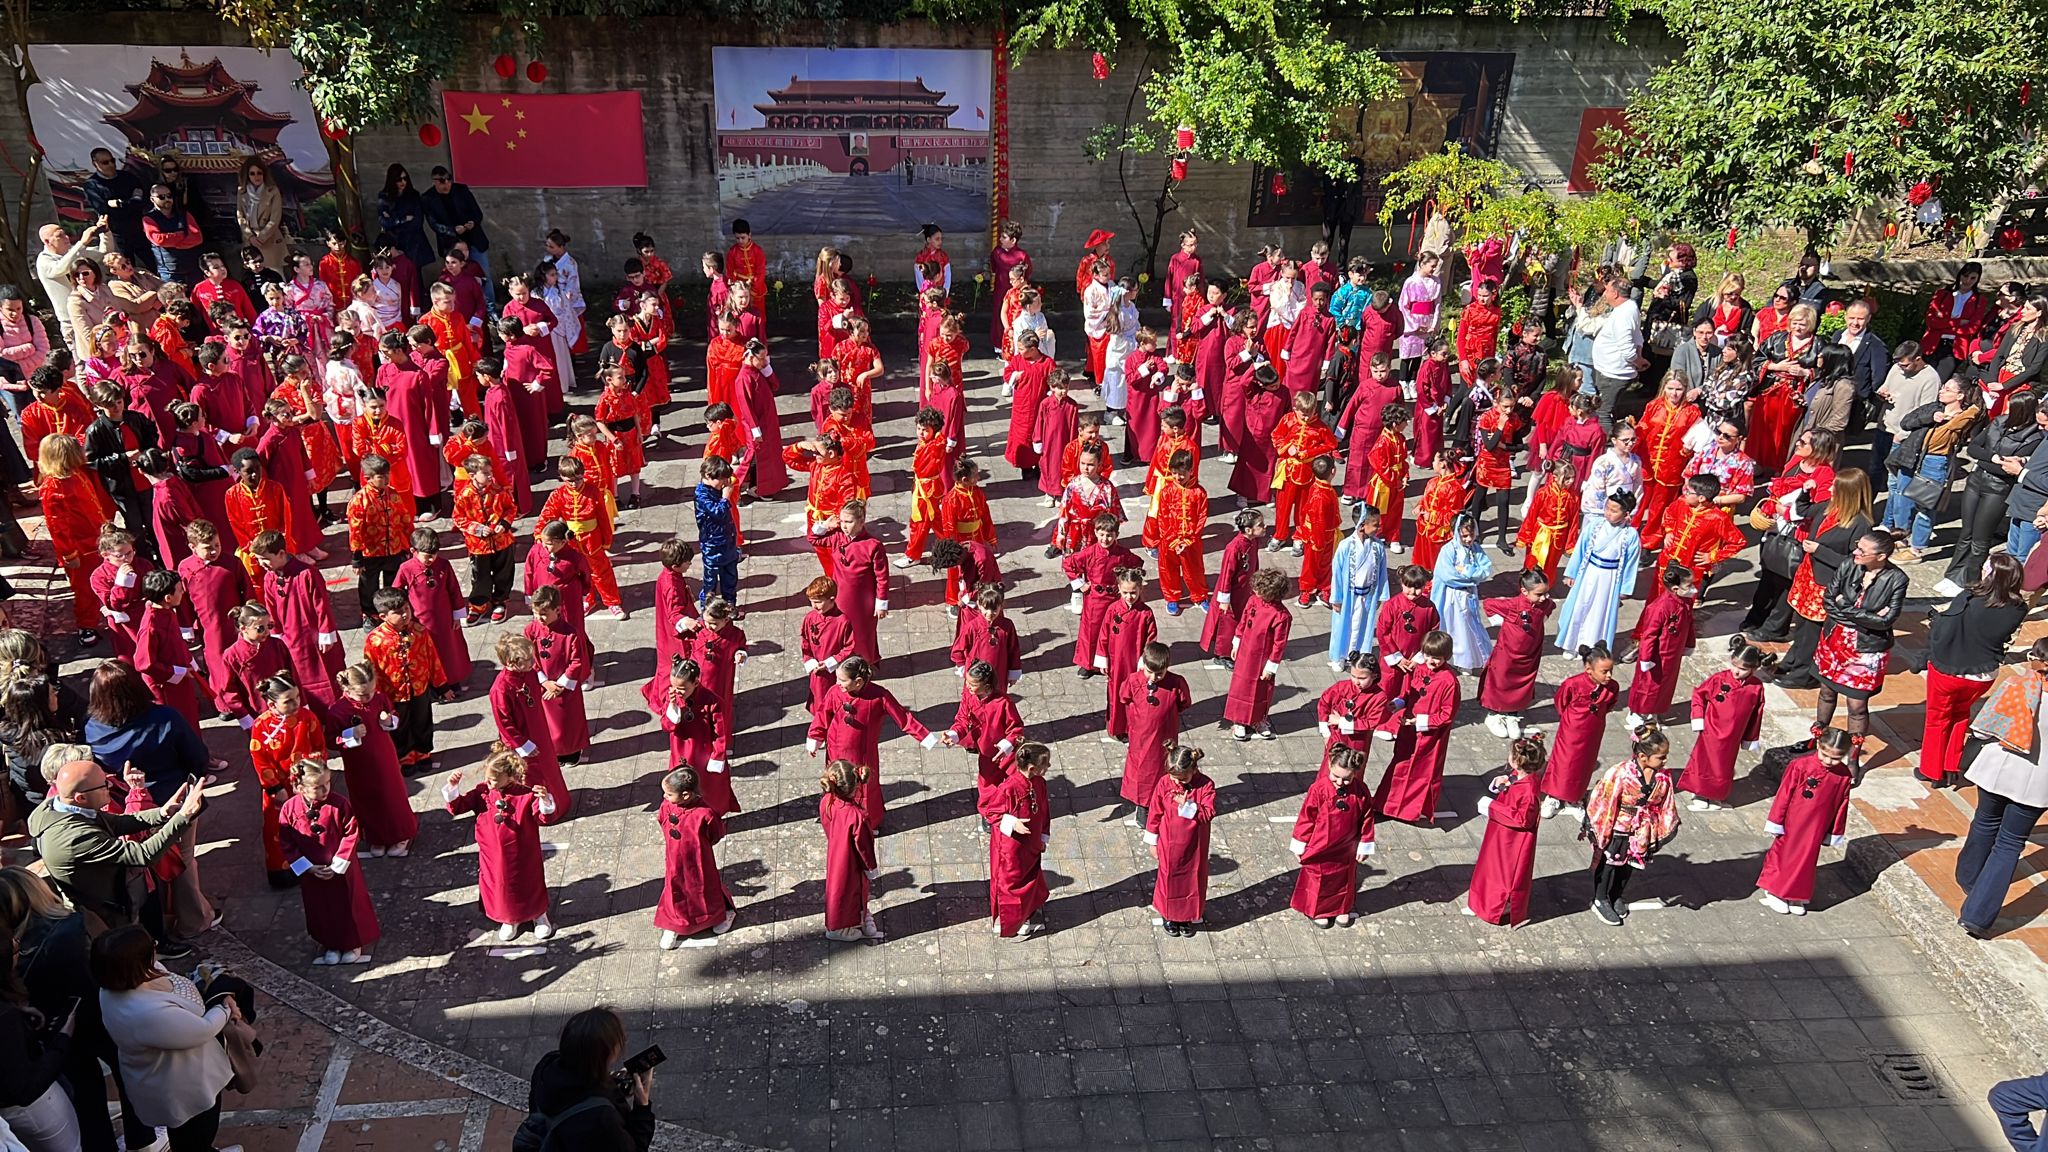 La scuola primaria bilingue di Benevento celebra il “Chinese Day”